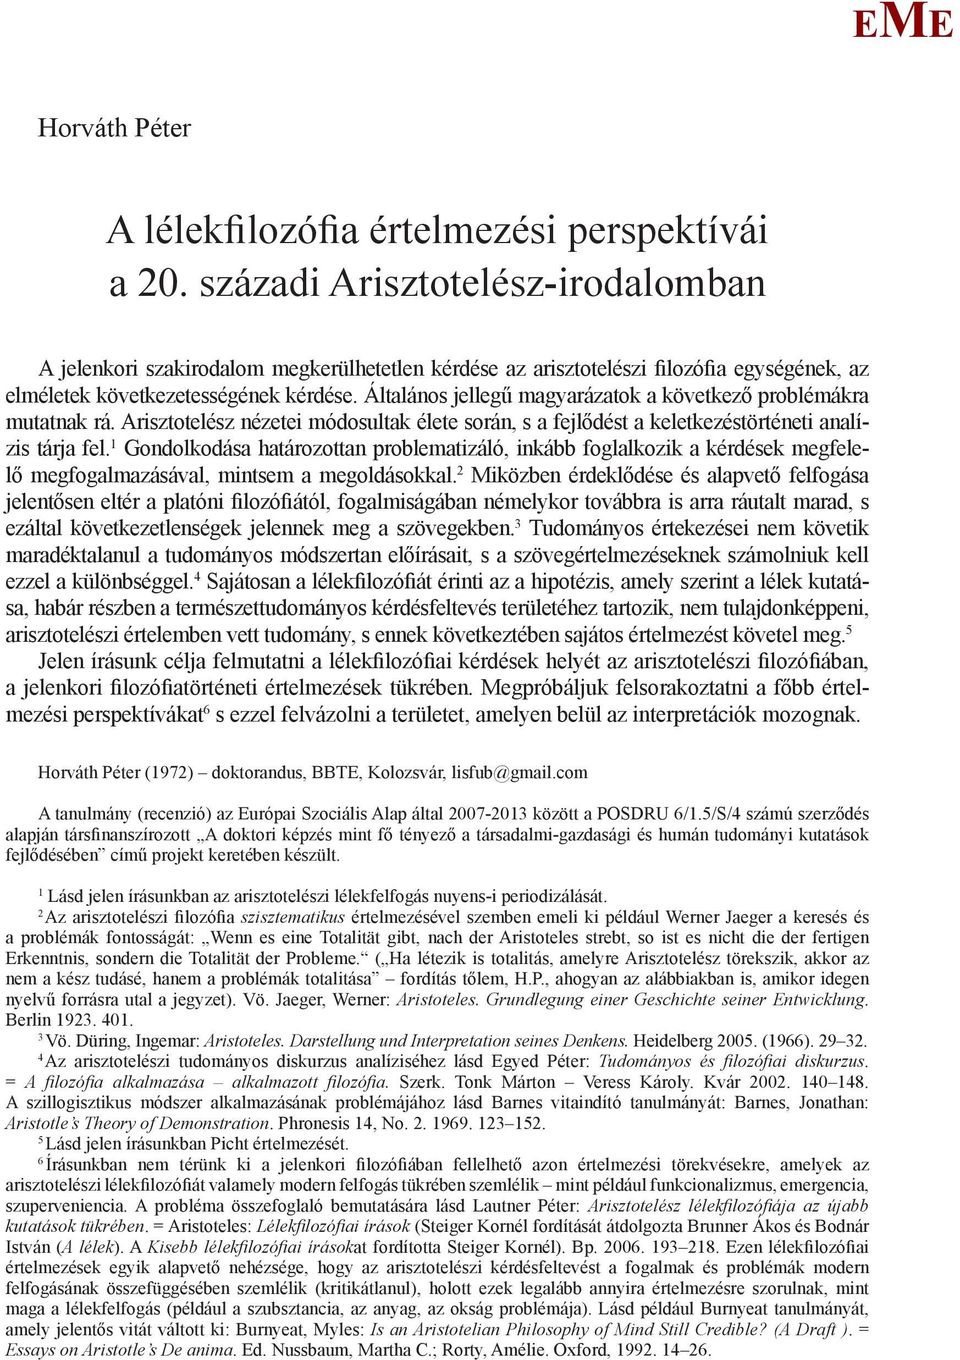 A lélekfilozófia értelmezési perspektívái a 20. századi Arisztotelész-irodalomban  - PDF Ingyenes letöltés